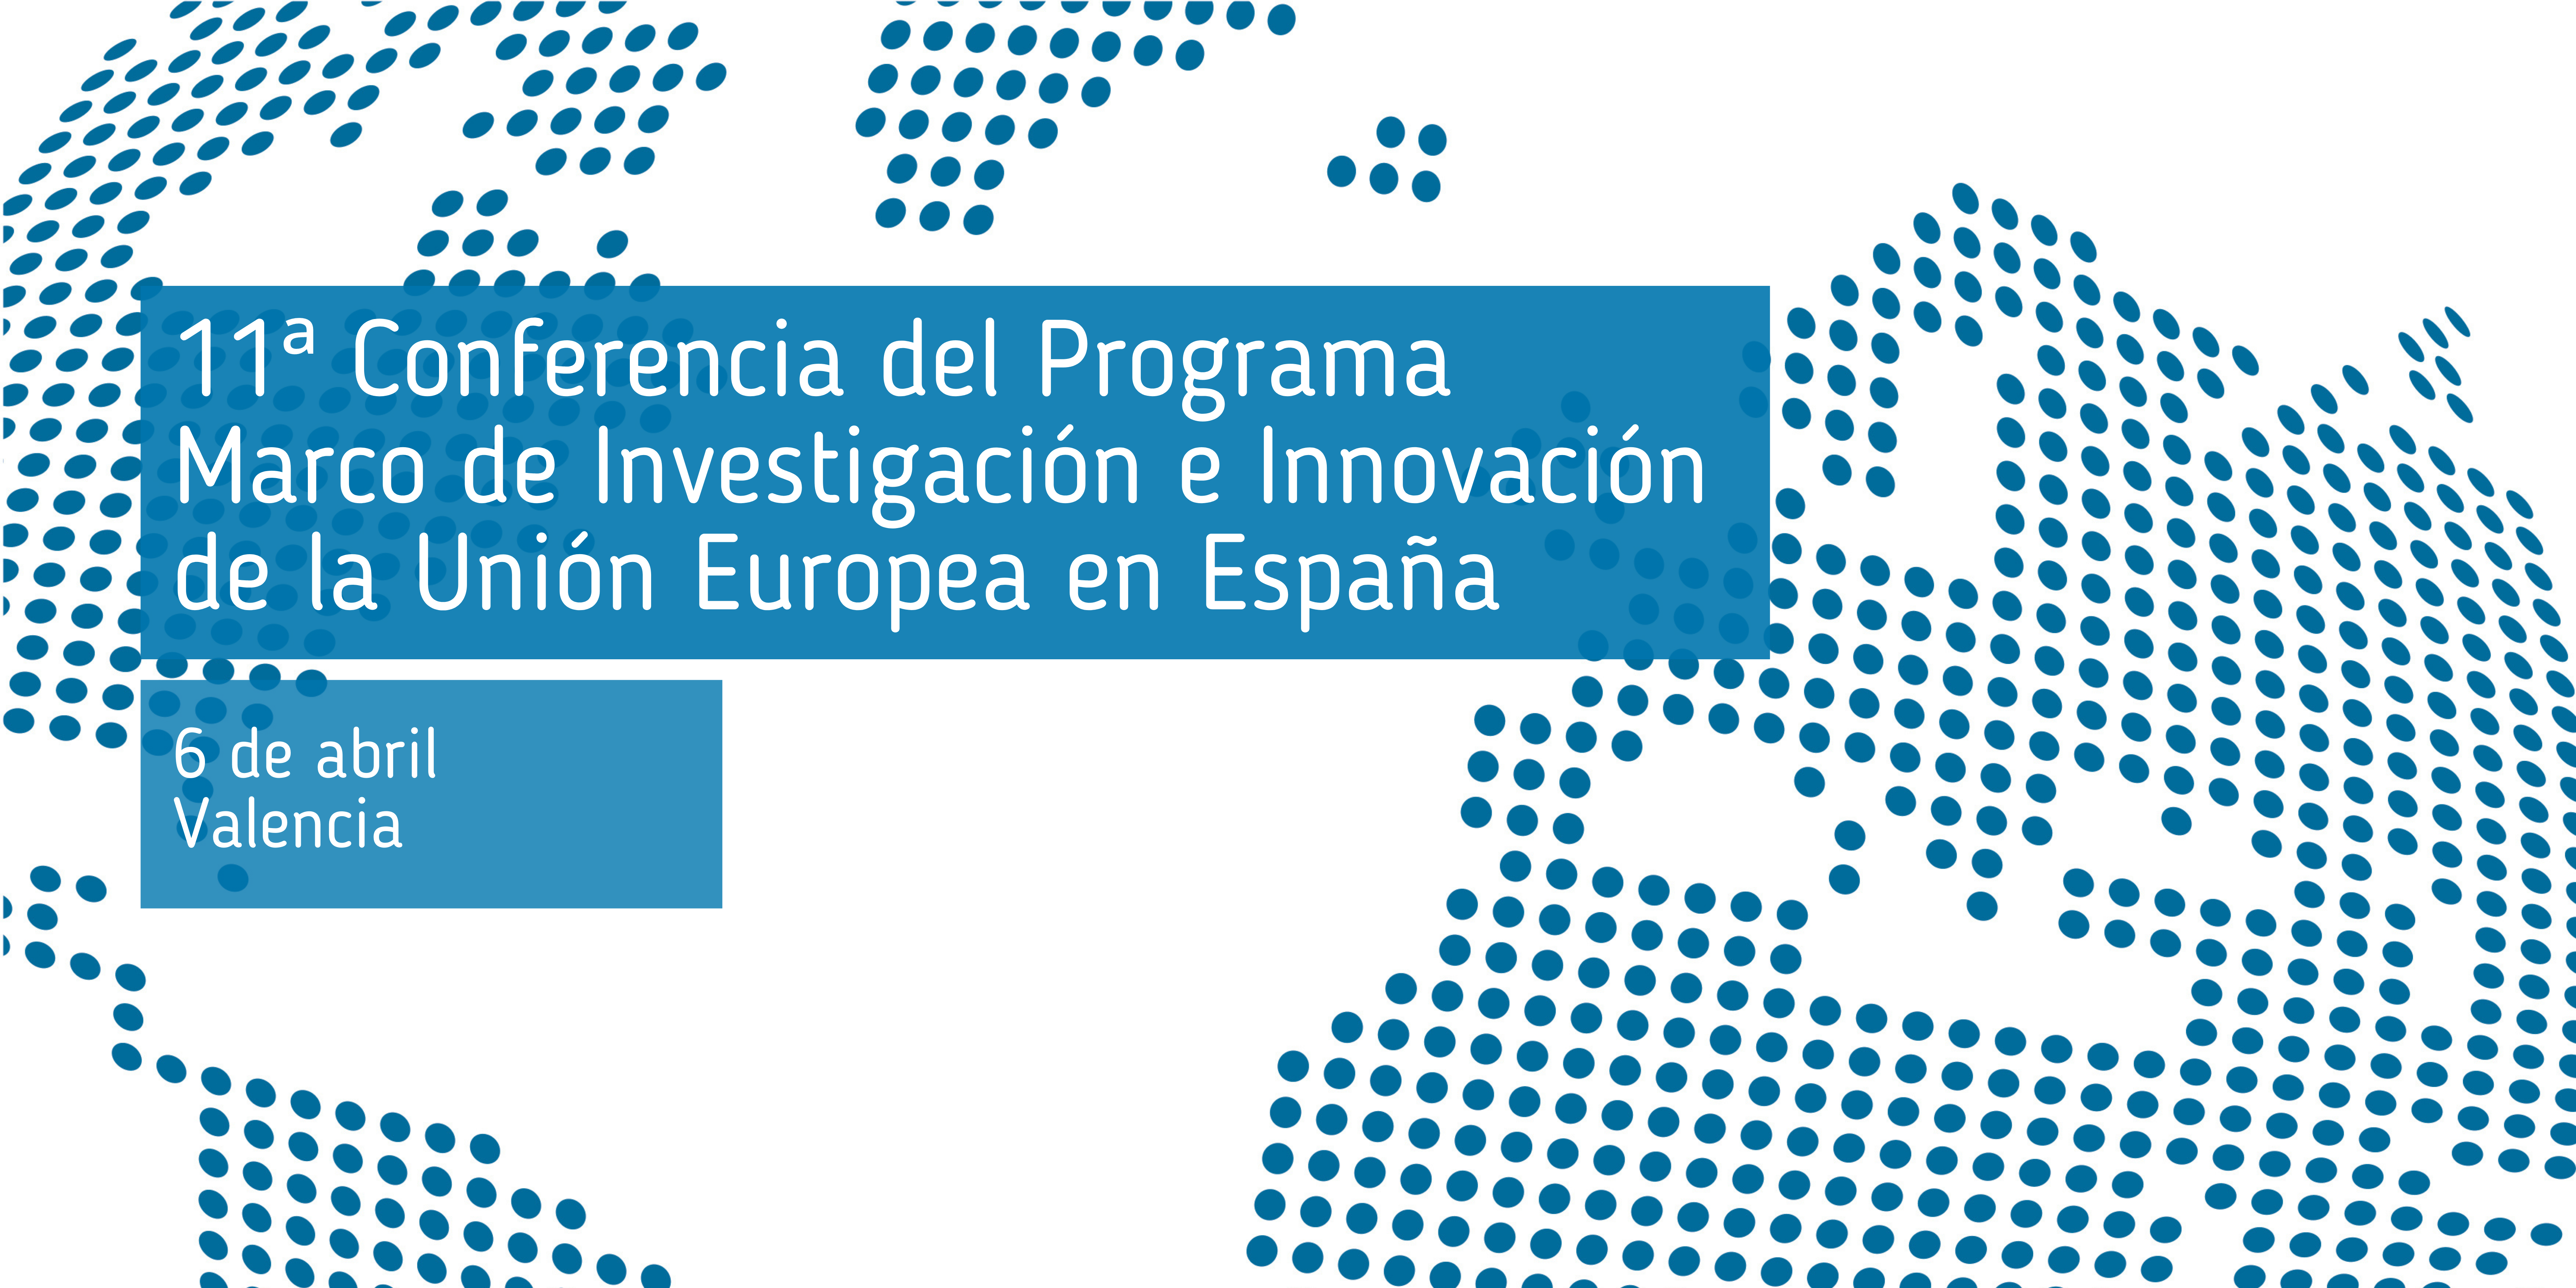 11ª_conferencia_del_programa_marco_de_investigación_e_innovación_de_la_unión_europea